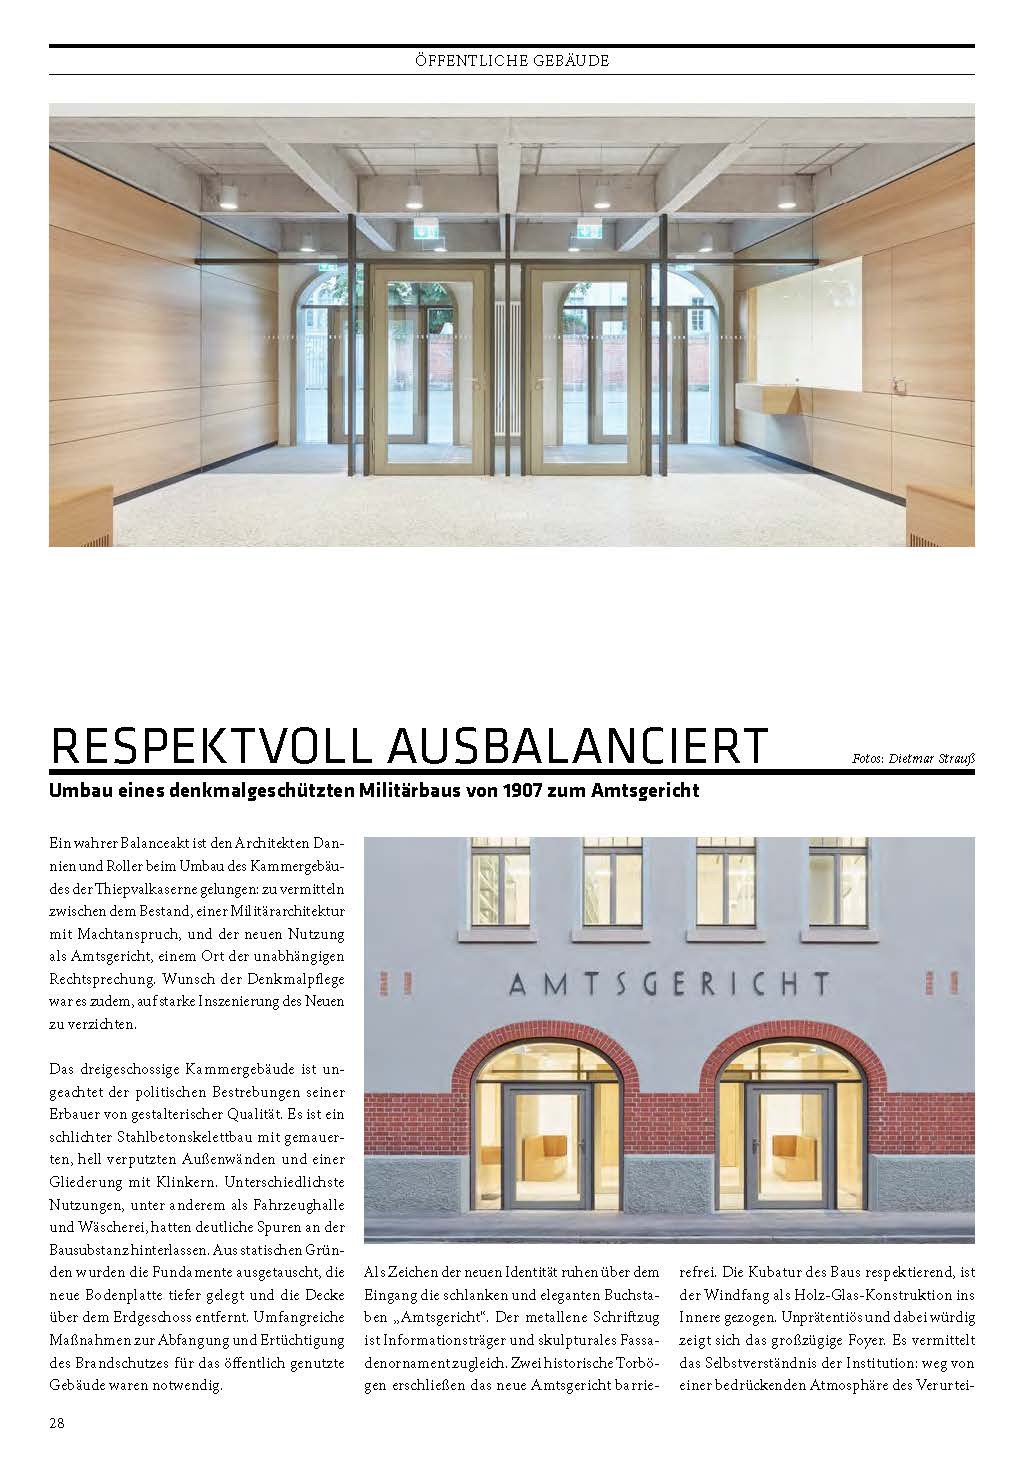 Das Architekturmagazin Cube veröffentlicht die denkmalpflegerische Sanierung des Amtsgerichts in Tübingen ({project_images:field_row_count})